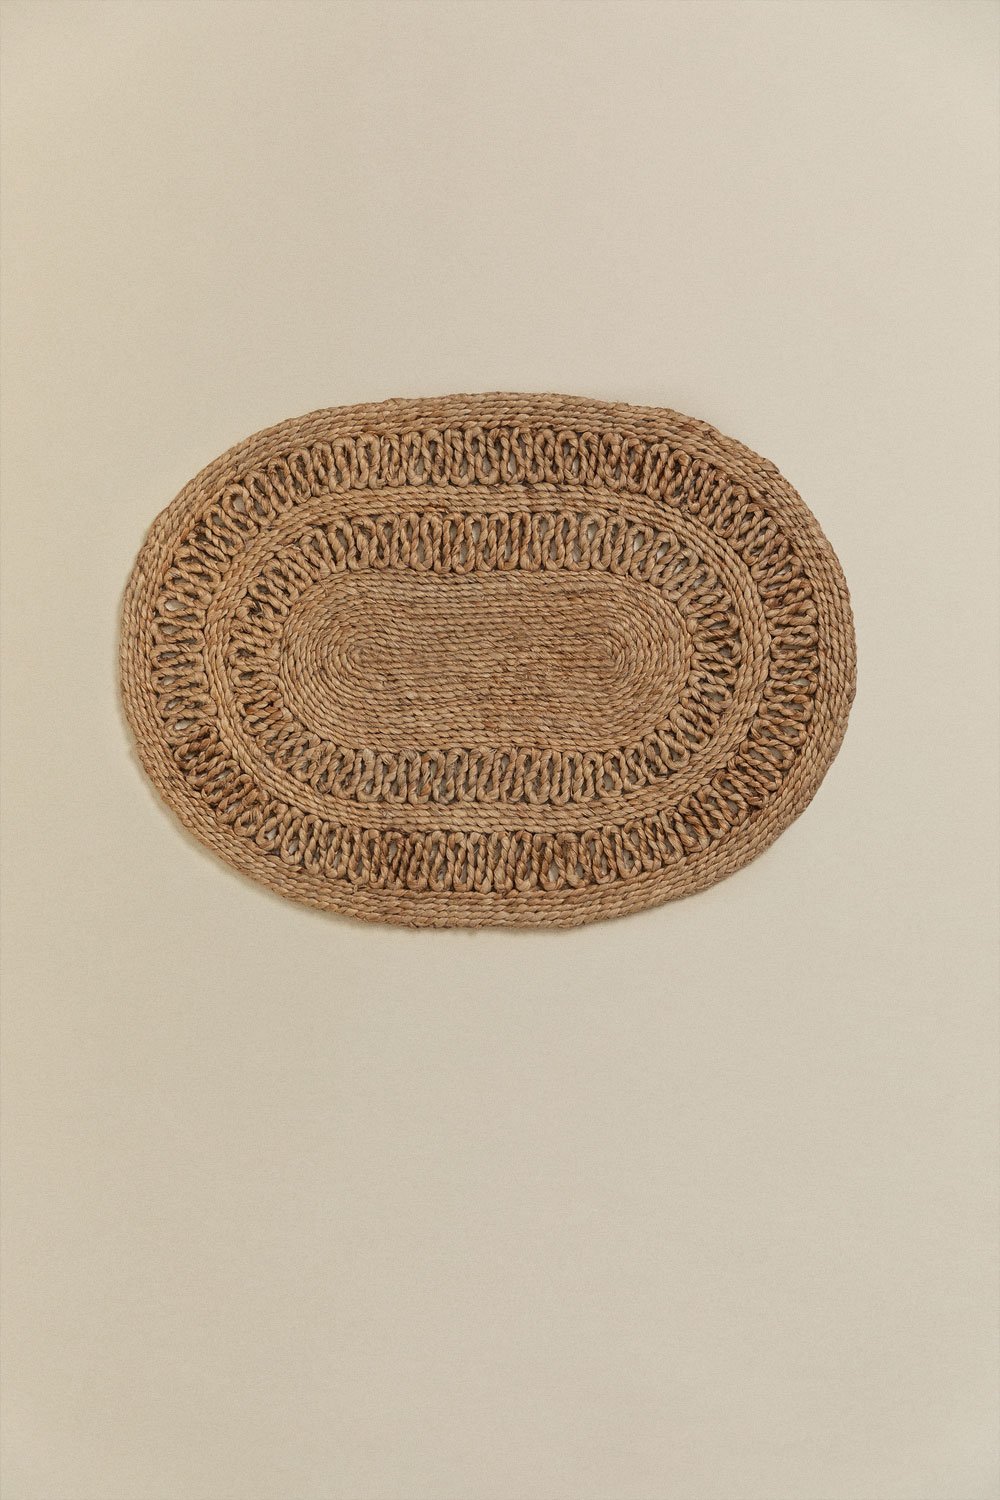 Zerbino Ovale in Juta (60x40 cm) Koblet, immagine della galleria 2